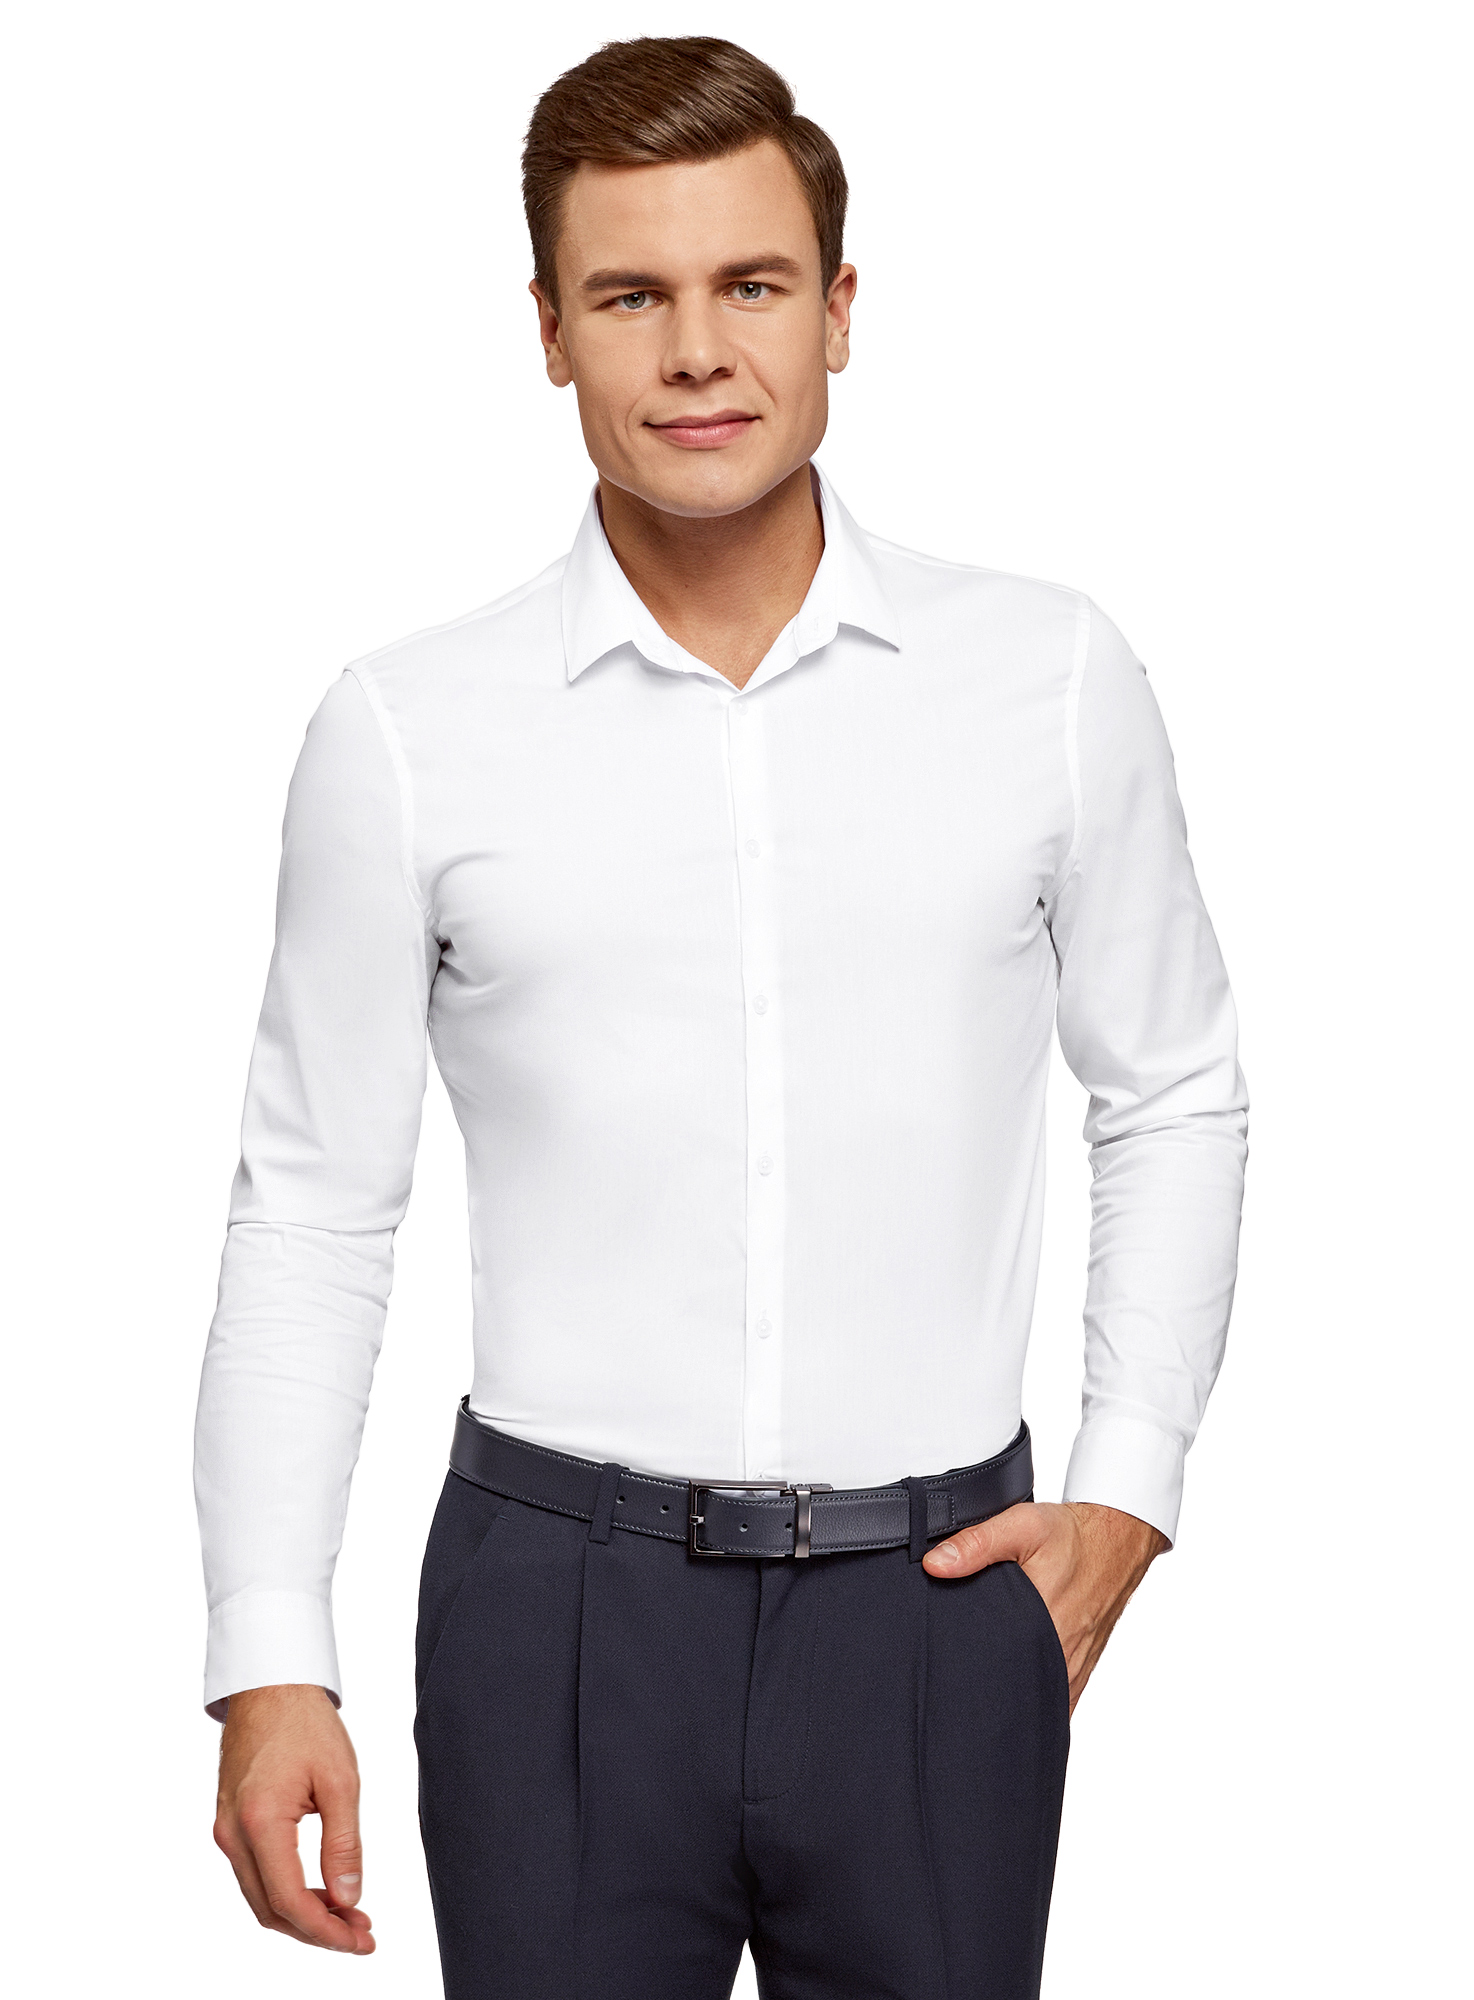 Рубашка мужская oodji 3B140008M белая XL